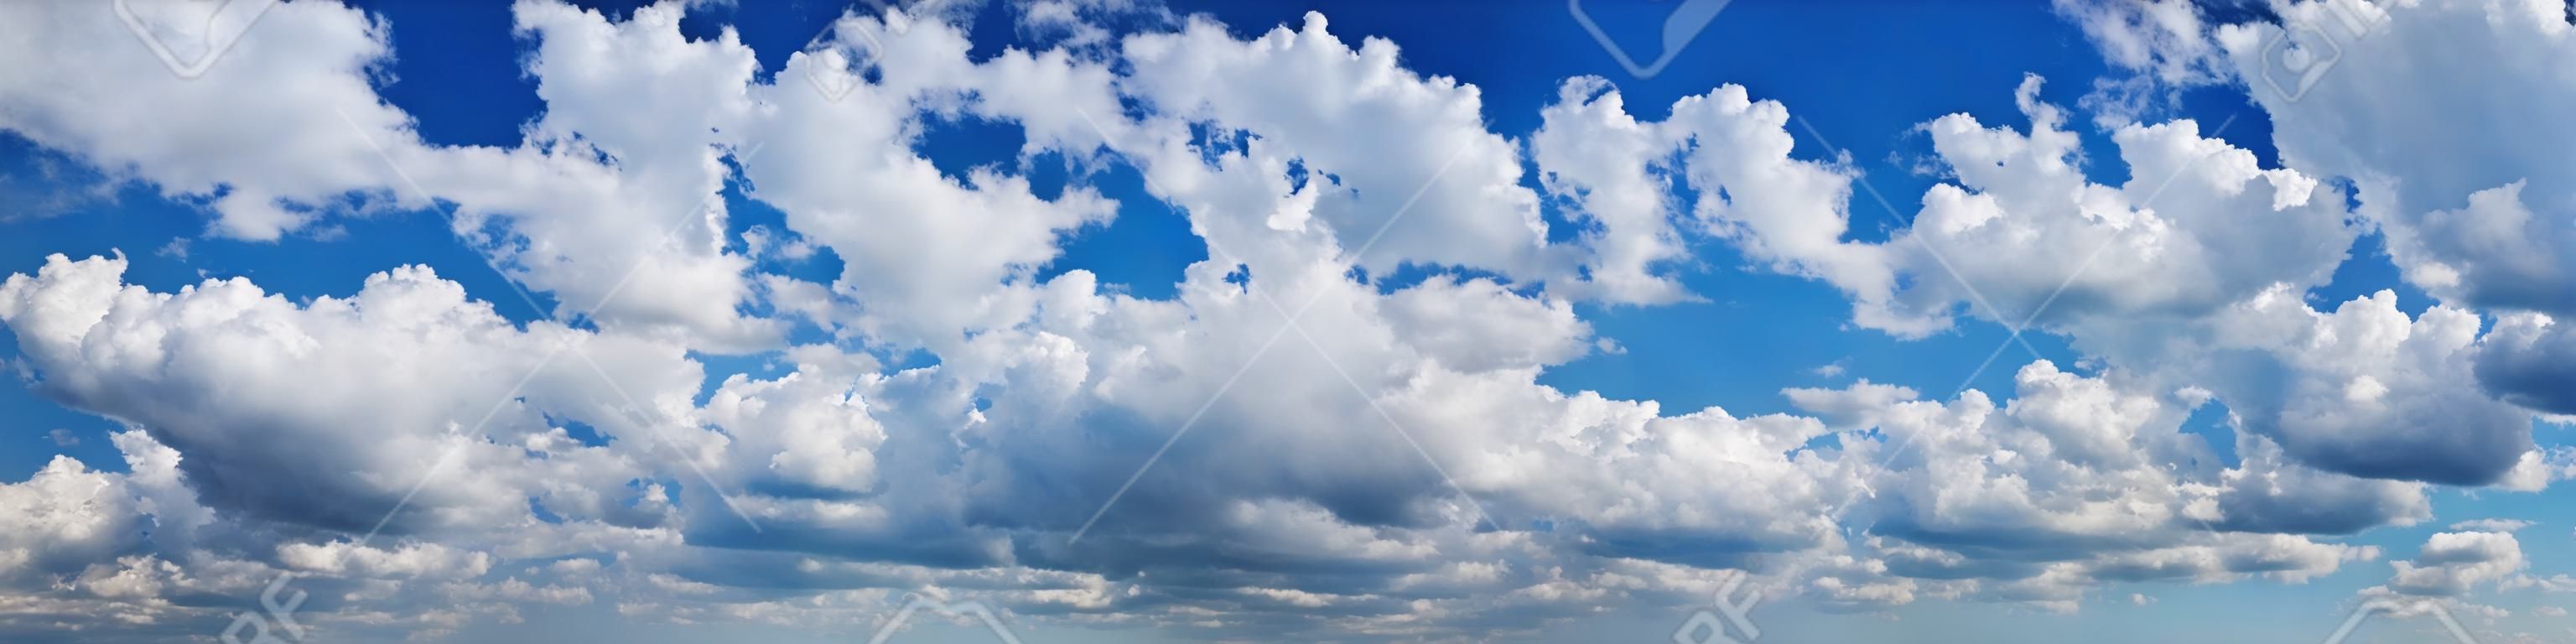 Kék ég, sok gomolyfelhő bolyhos, fehér felhők. Nagyon széles formátumú.